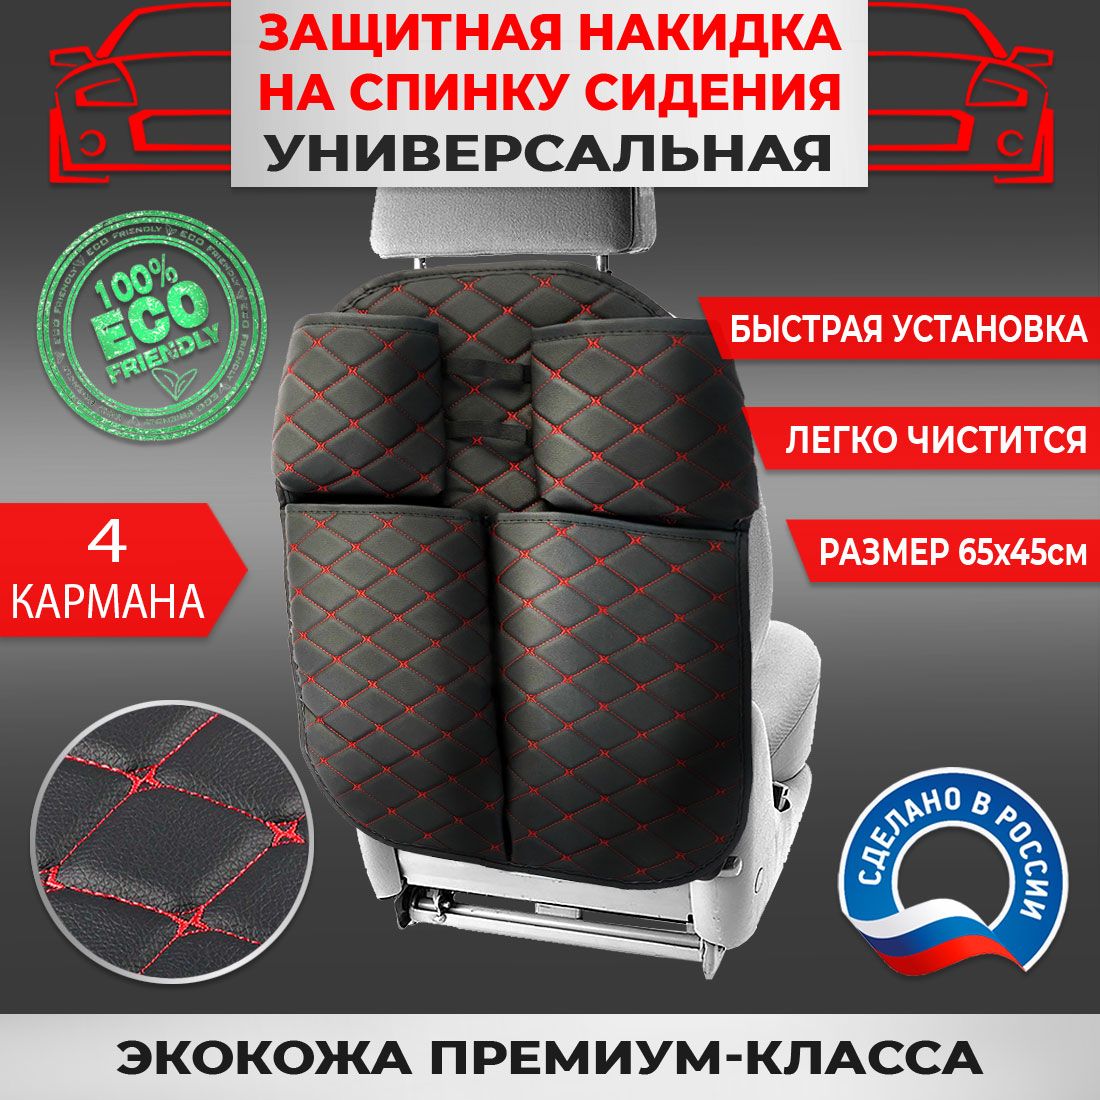 Защитная накидка на спинку сидения авто Экокожа Черная Бабочка Красная 4 кармана с подбутыльником